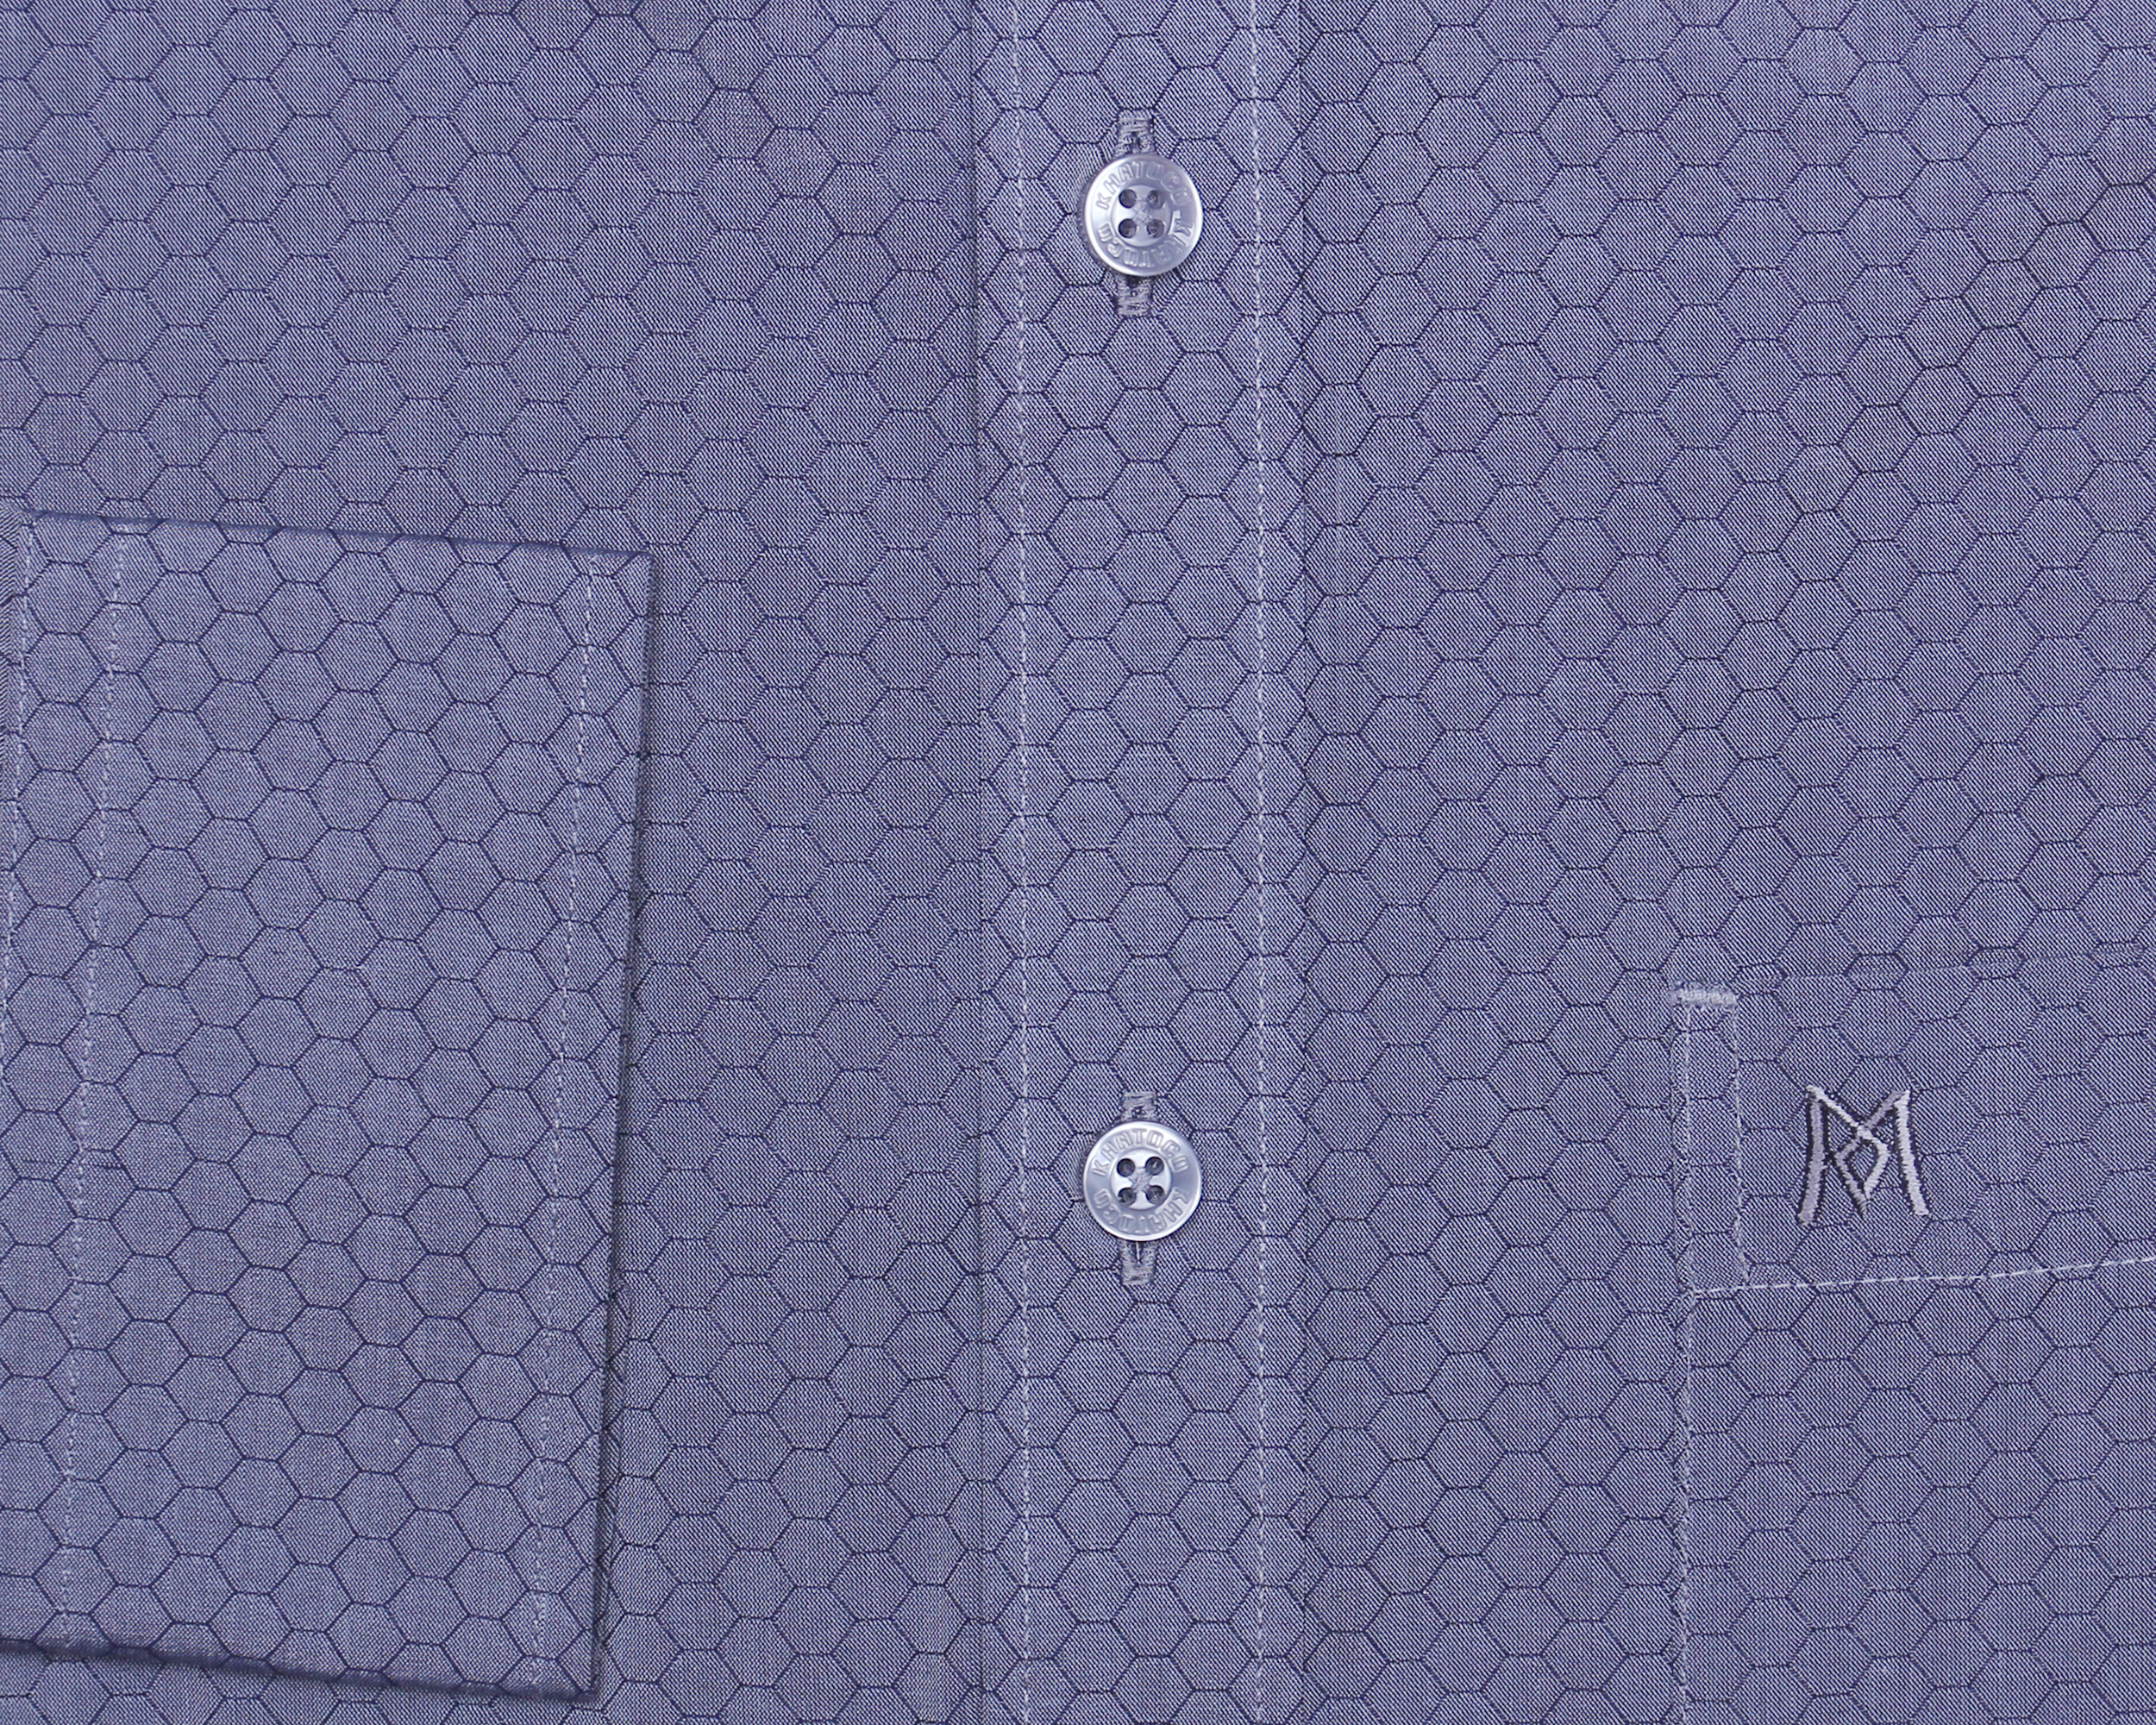 Áo sơ mi nam tay dài form tailor họa tiết xám xanh Khatoco A1MD468T1- CNMK017-2204-D